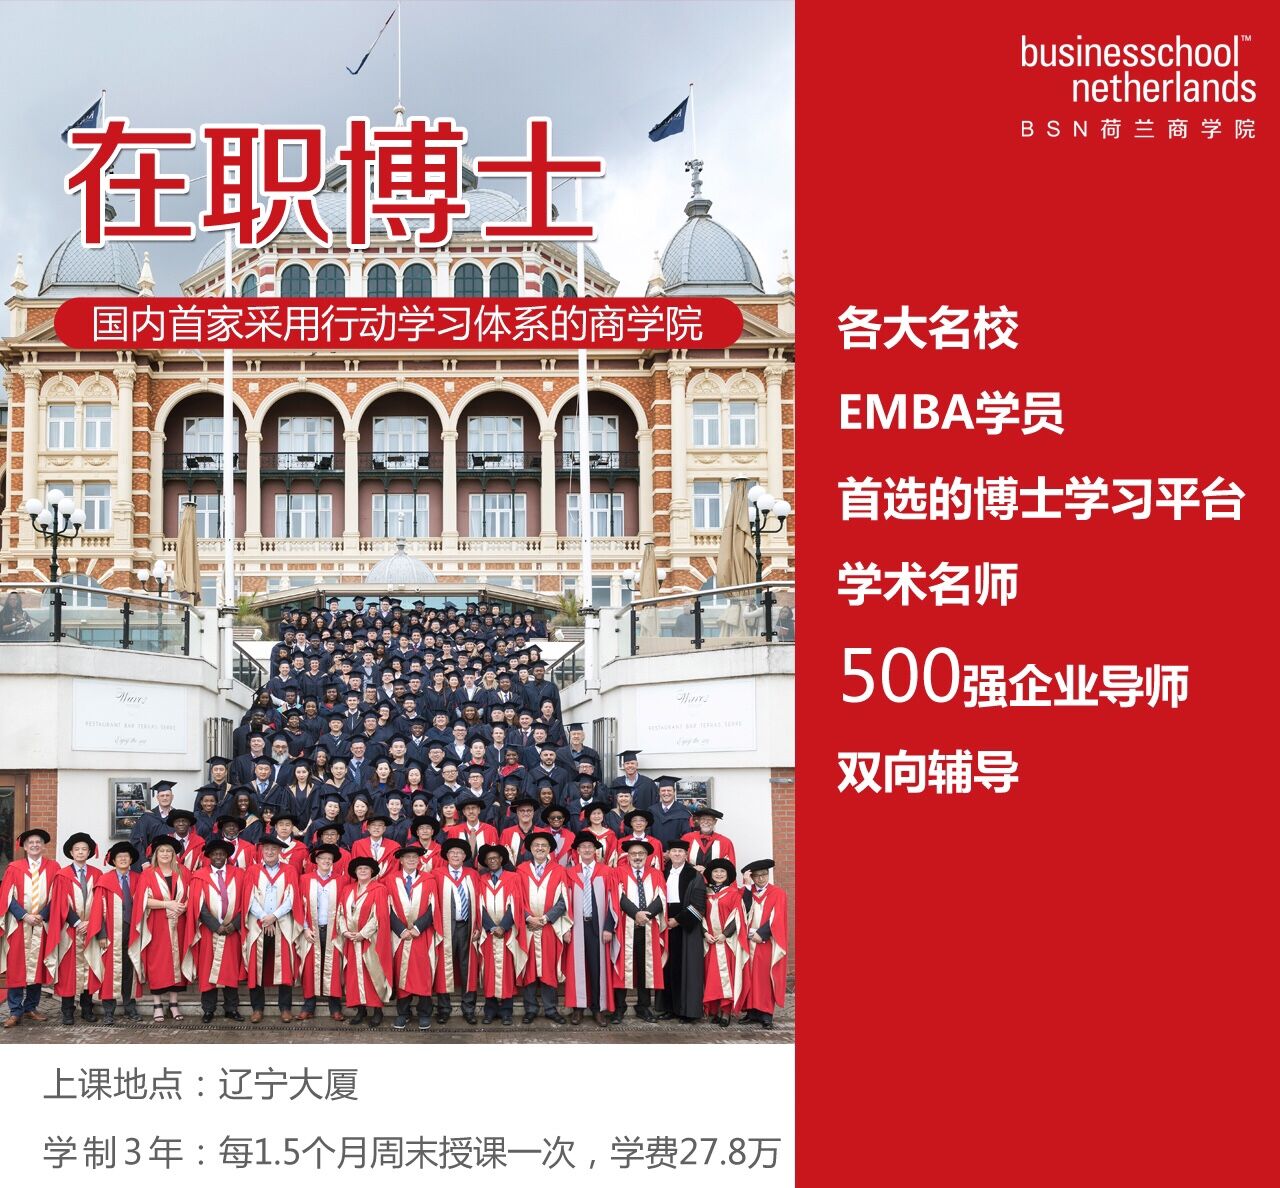 中国教育部承认荷兰商学院高级管理者工商管理博士1365112